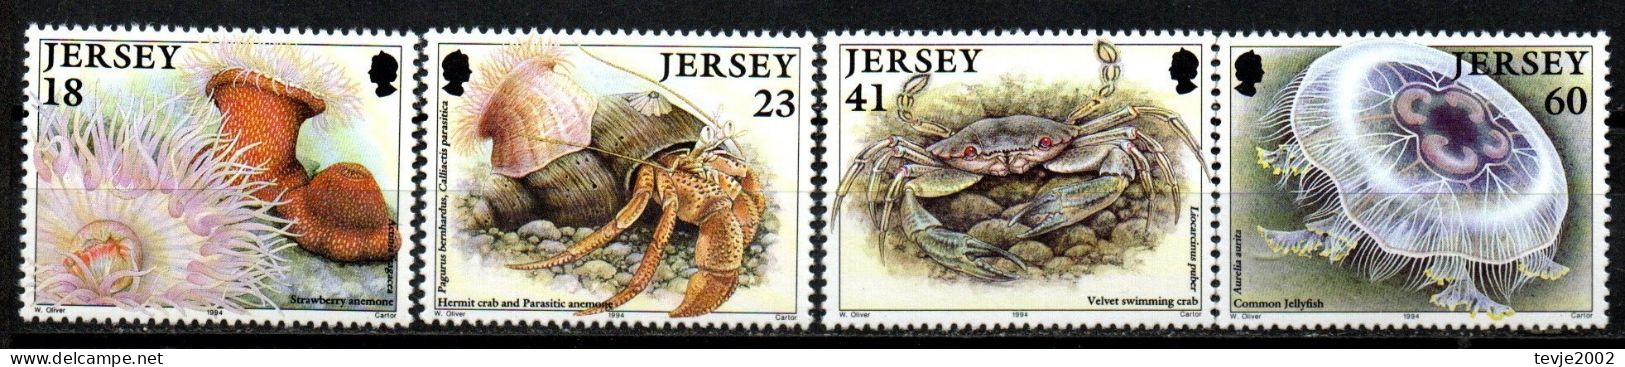 Jersey 1994 - Mi.Nr. 665 - 668 - Postfrisch MNH - Tiere Animals Krabben Crabs - Crustáceos